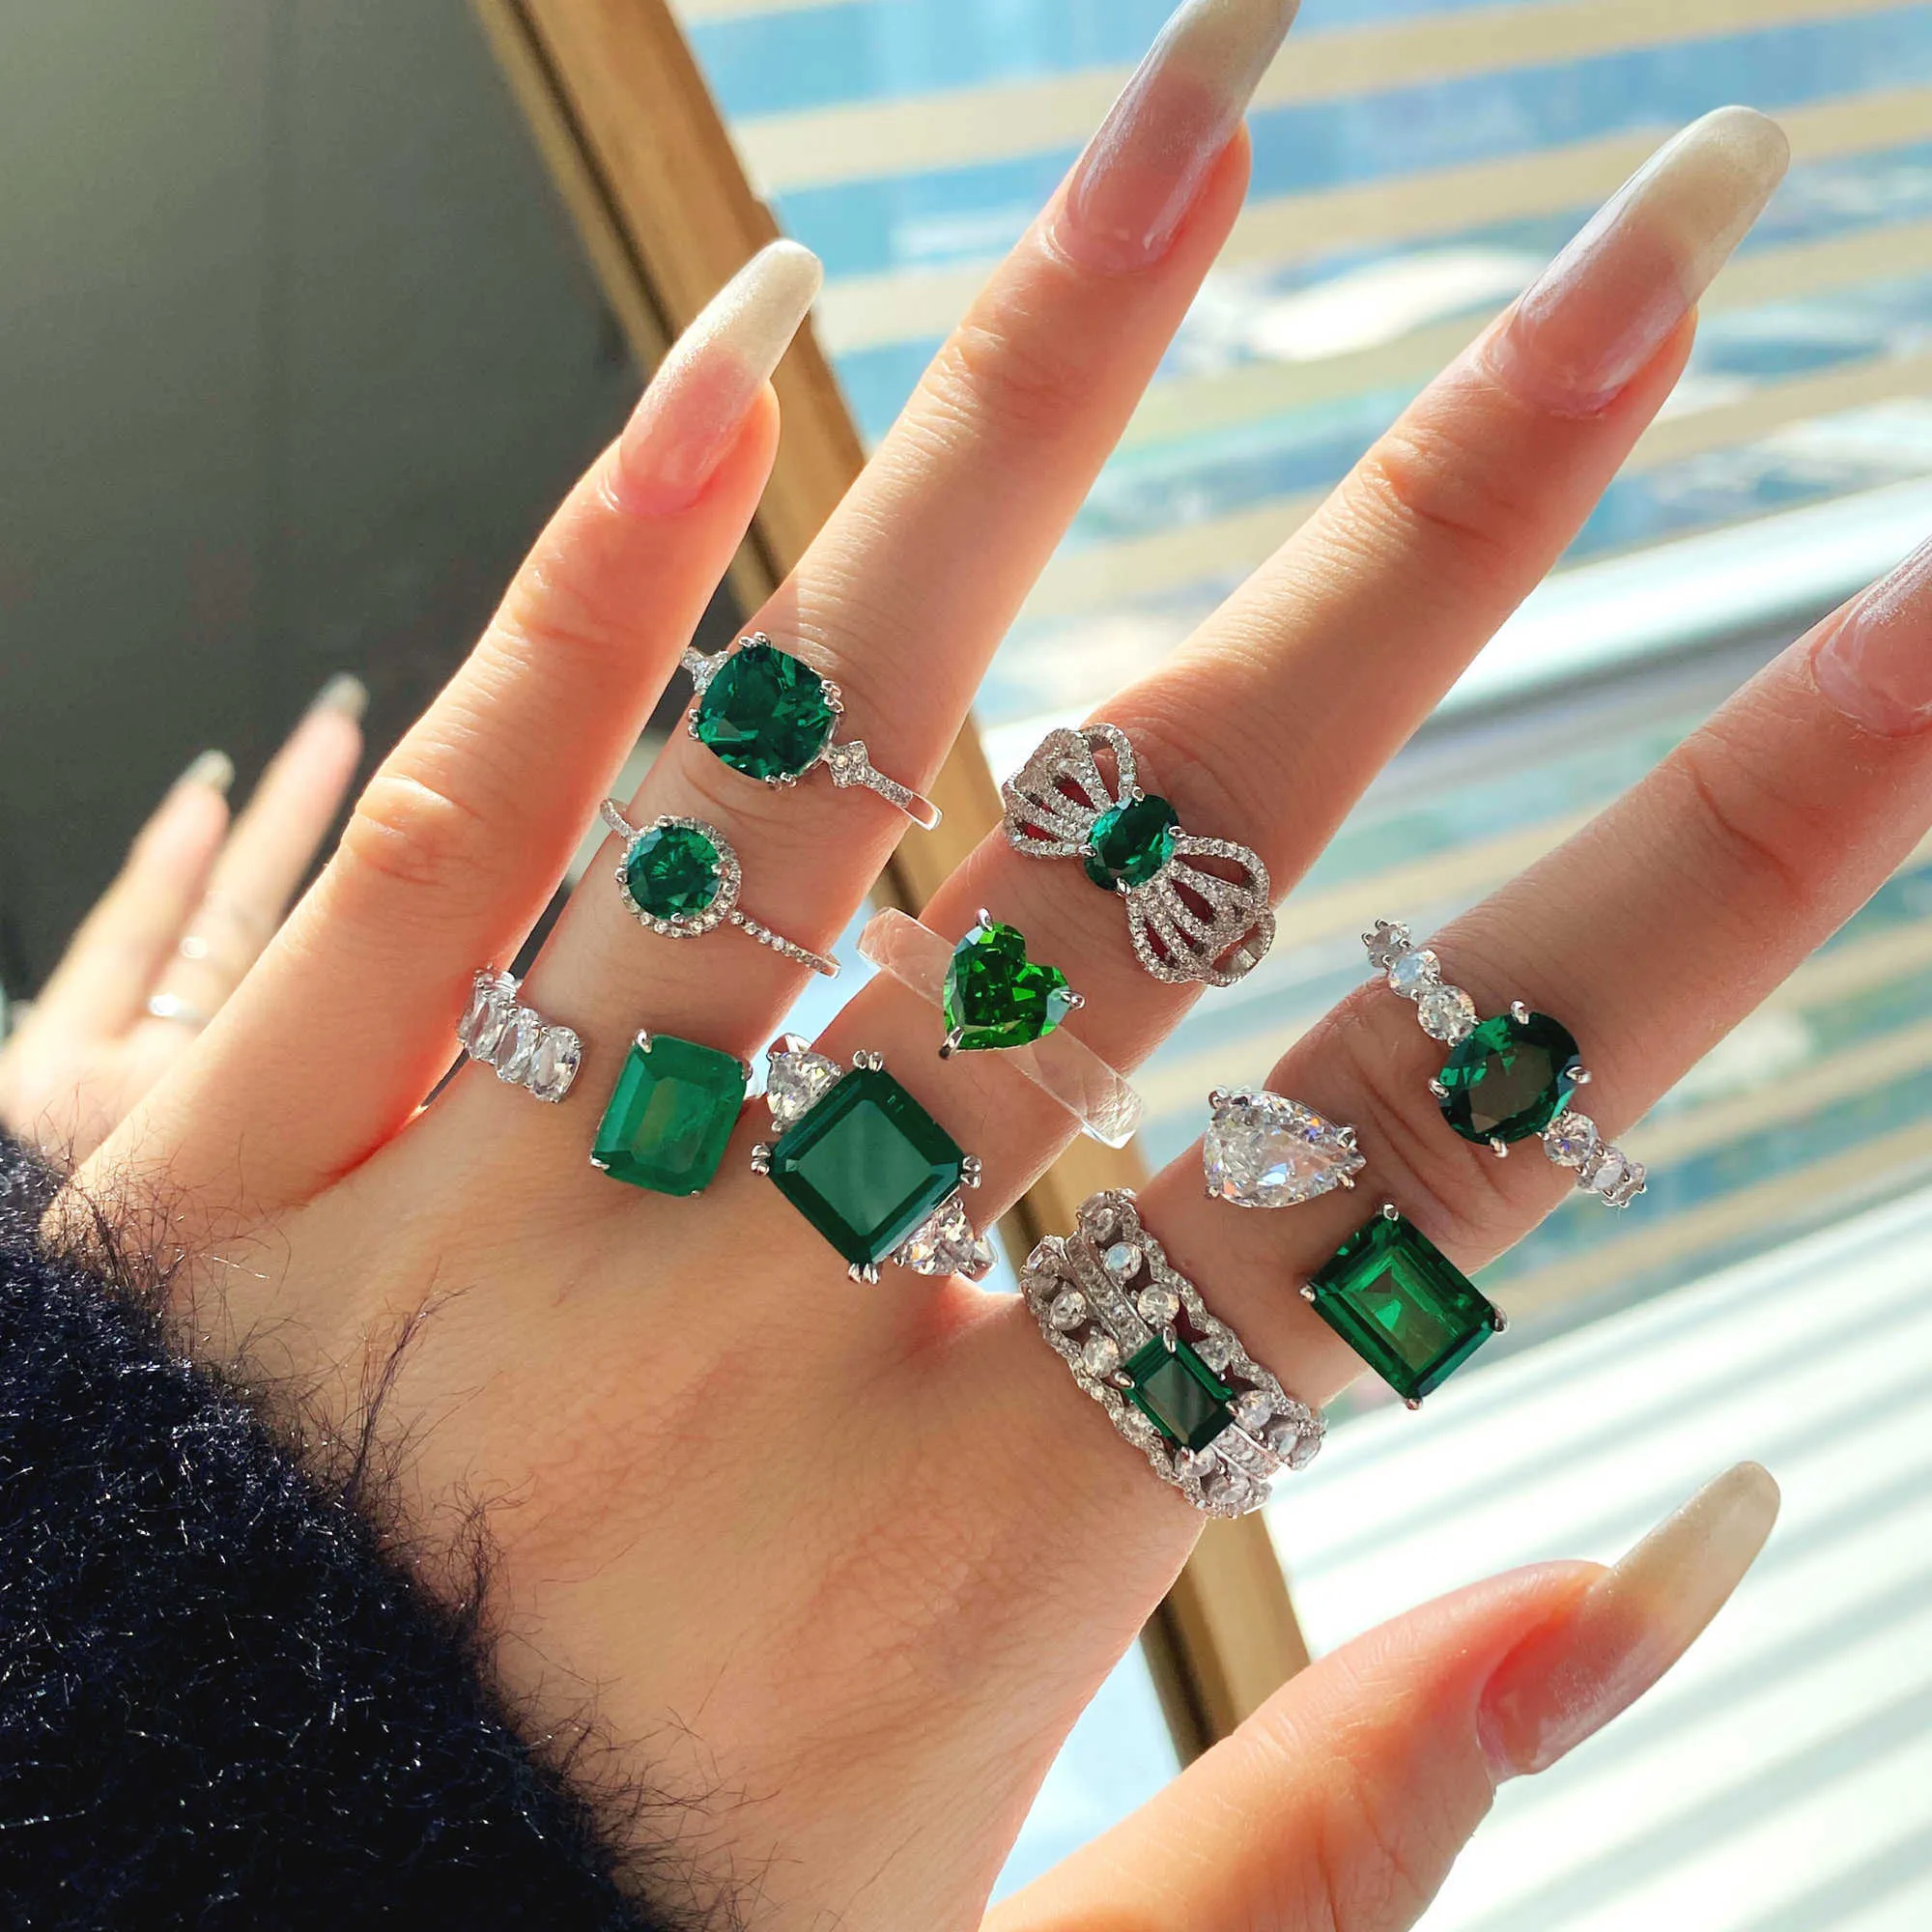 Emerald & Diamond Engagement Rings - Australia's Best Range